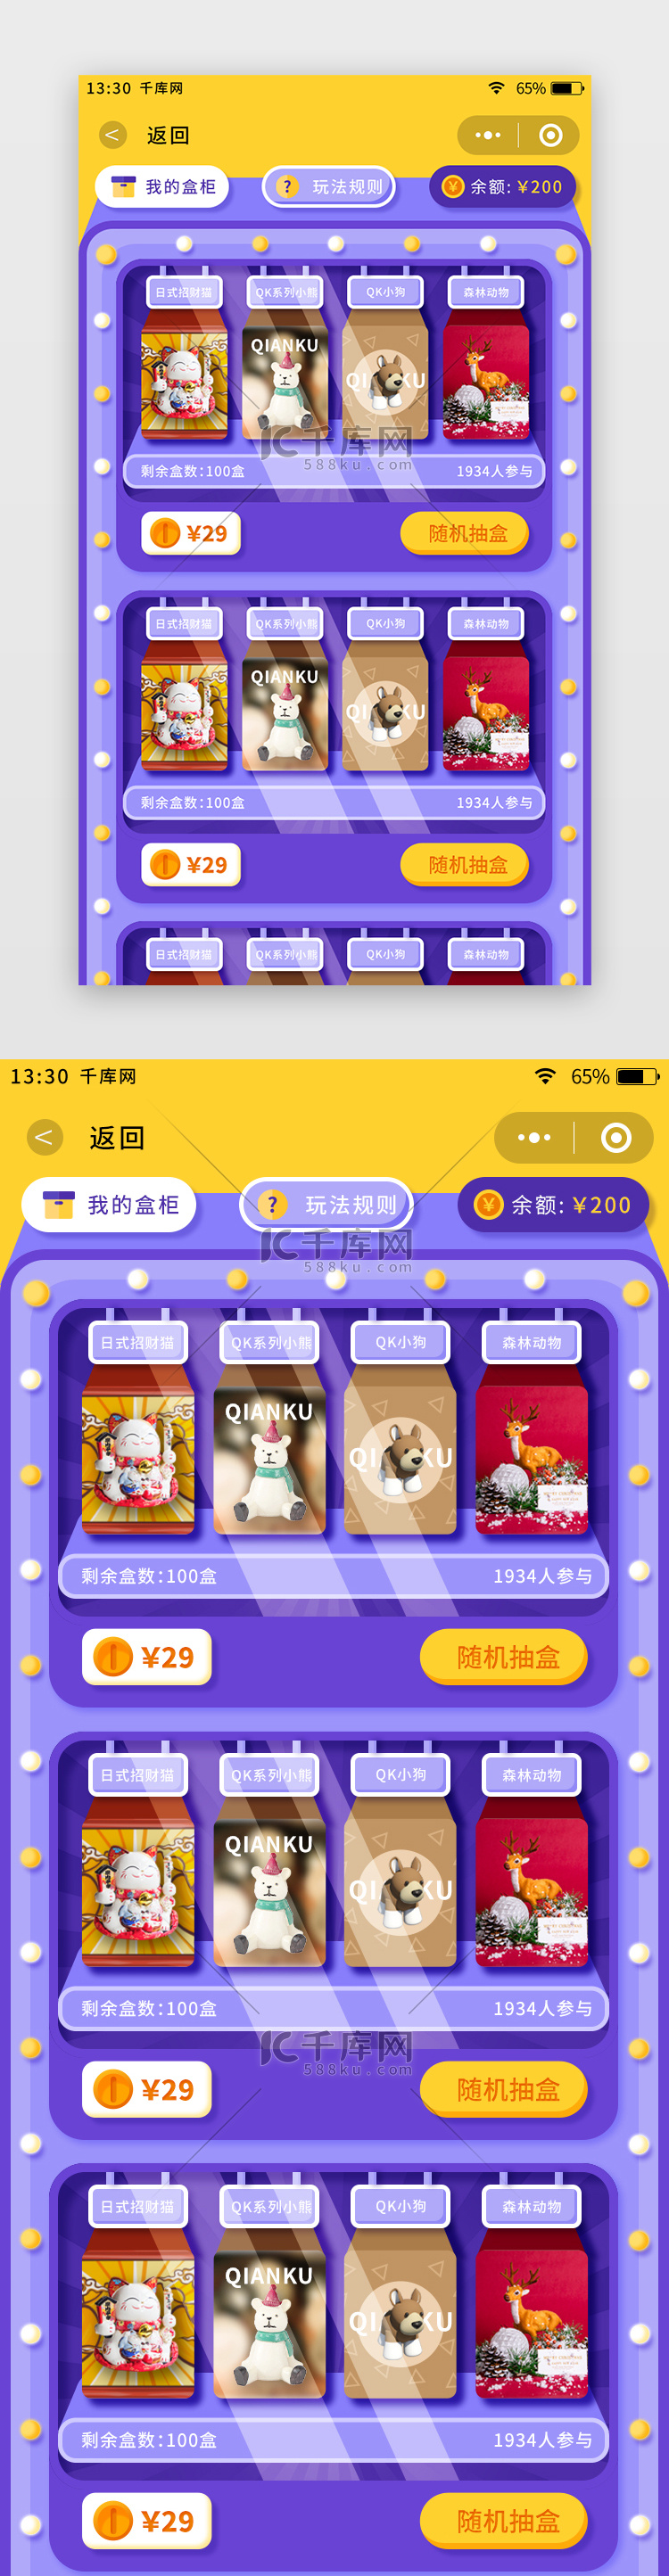 黄紫色扁平风盲盒商城app盲盒购买页